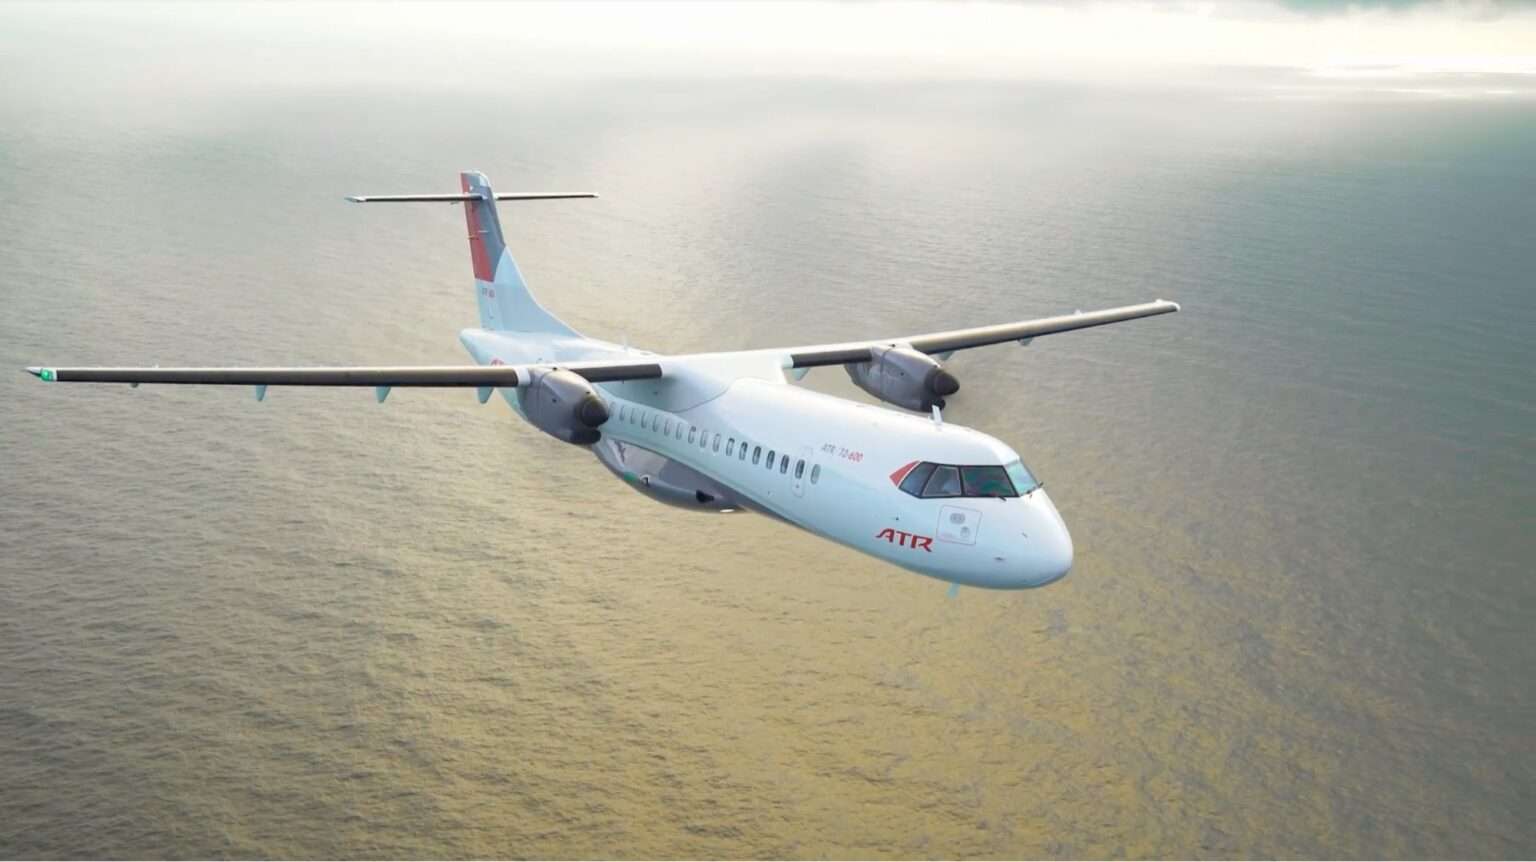 Dubai Air Show Recap Day 2: ATR Enters The Scoresheet